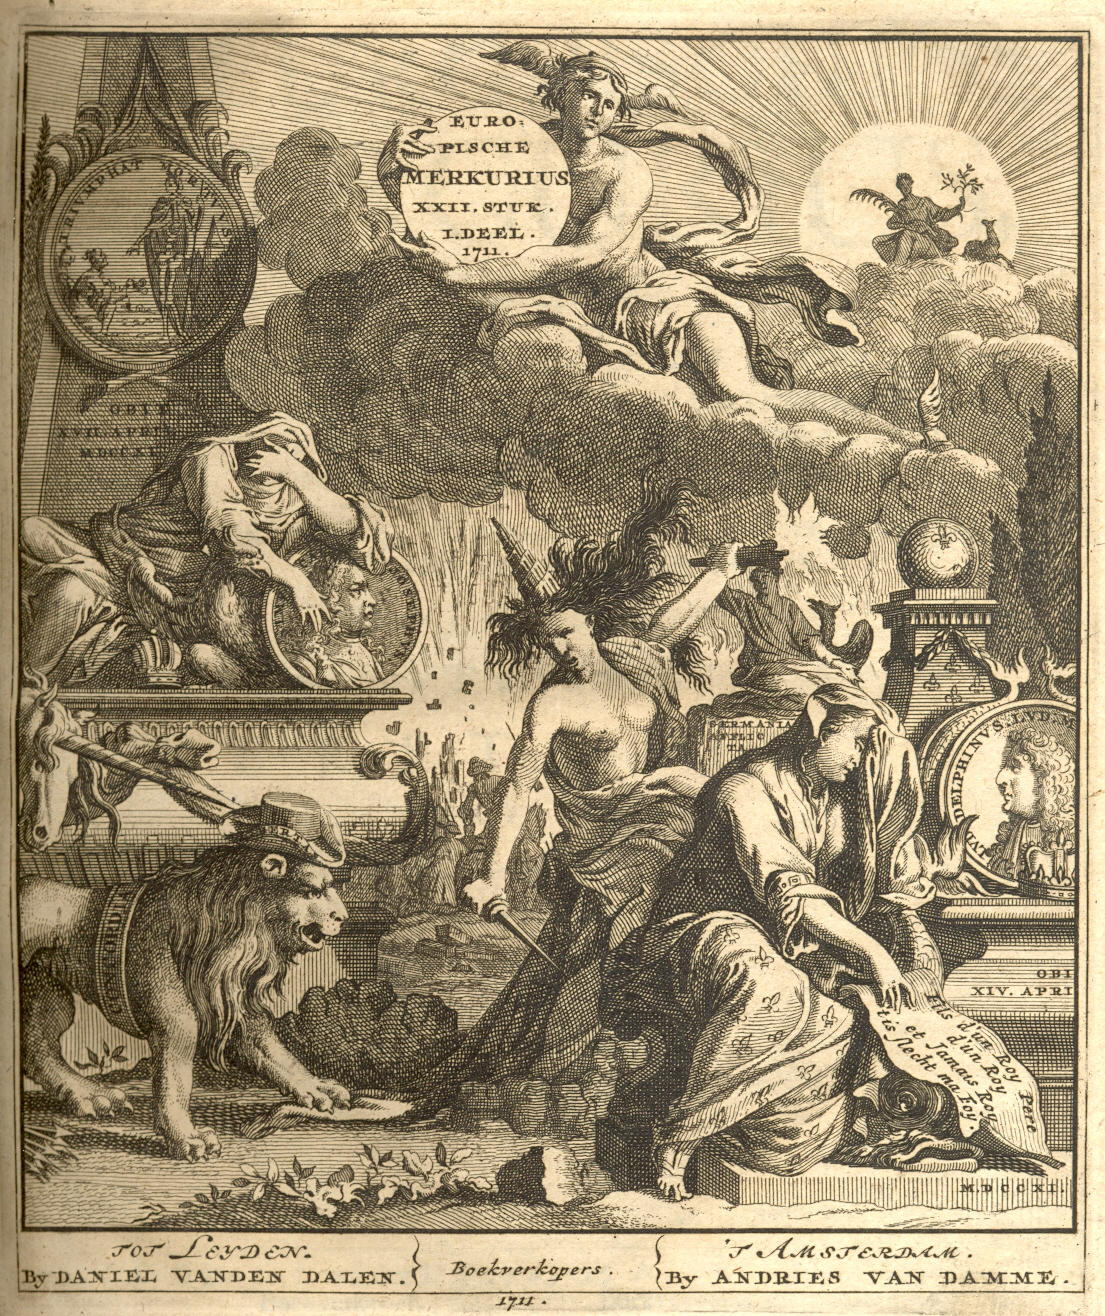 Europische Mercurius, 1711.